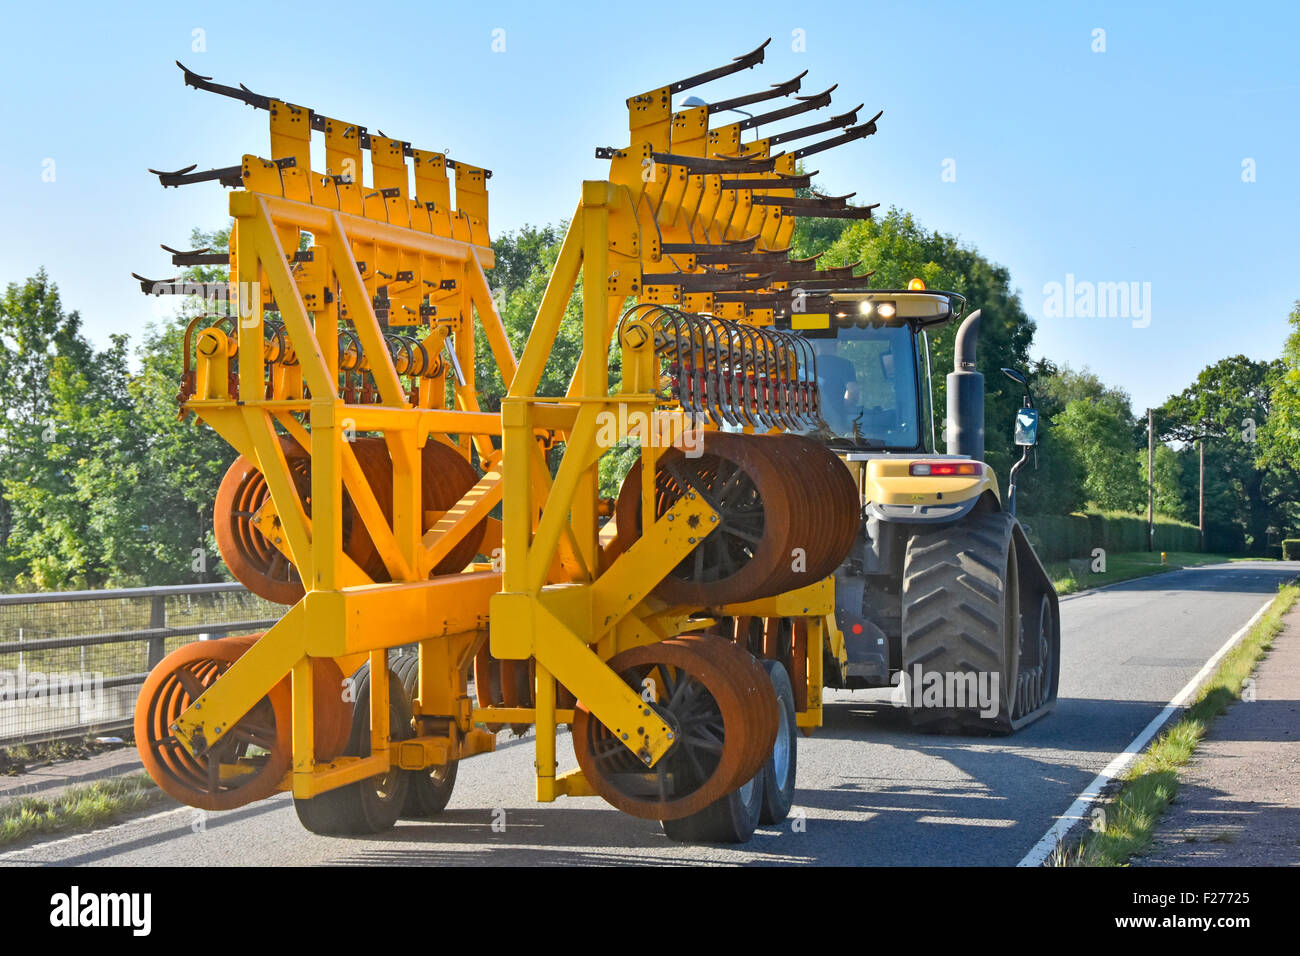 Agriculteur qui conduit un tracteur Challenger Caterpillar de grande taille remorquant un équipement agricole de herse à disque plié dans une ruelle de campagne étroite Essex Angleterre Royaume-Uni Banque D'Images